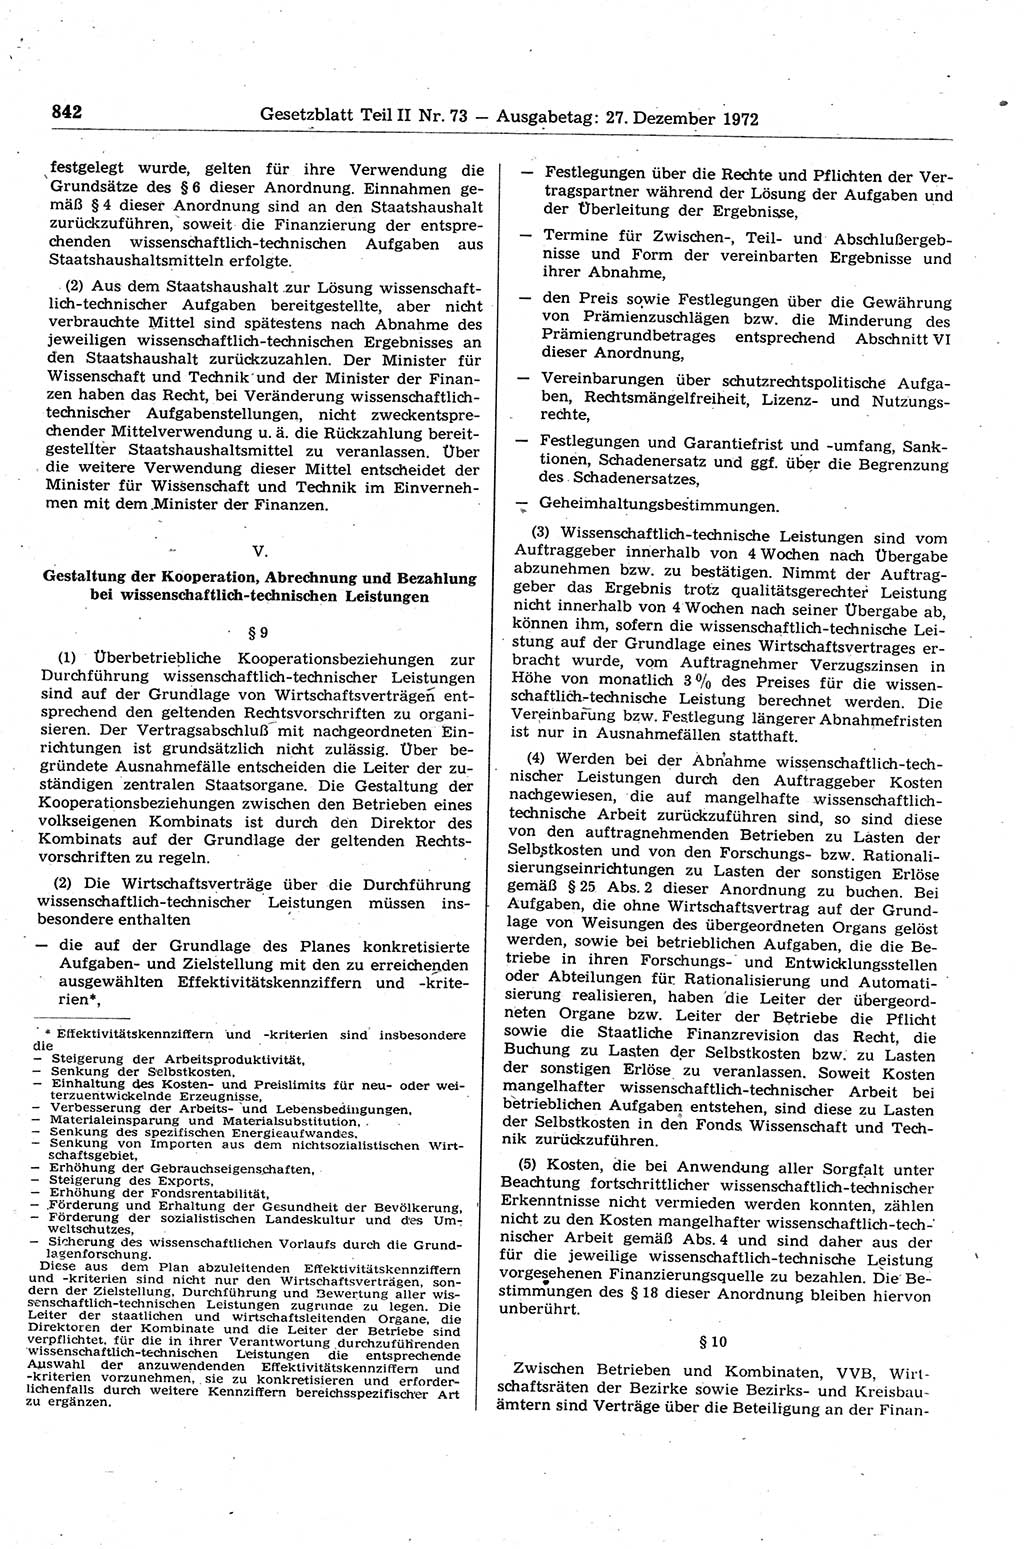 Gesetzblatt (GBl.) der Deutschen Demokratischen Republik (DDR) Teil ⅠⅠ 1972, Seite 842 (GBl. DDR ⅠⅠ 1972, S. 842)